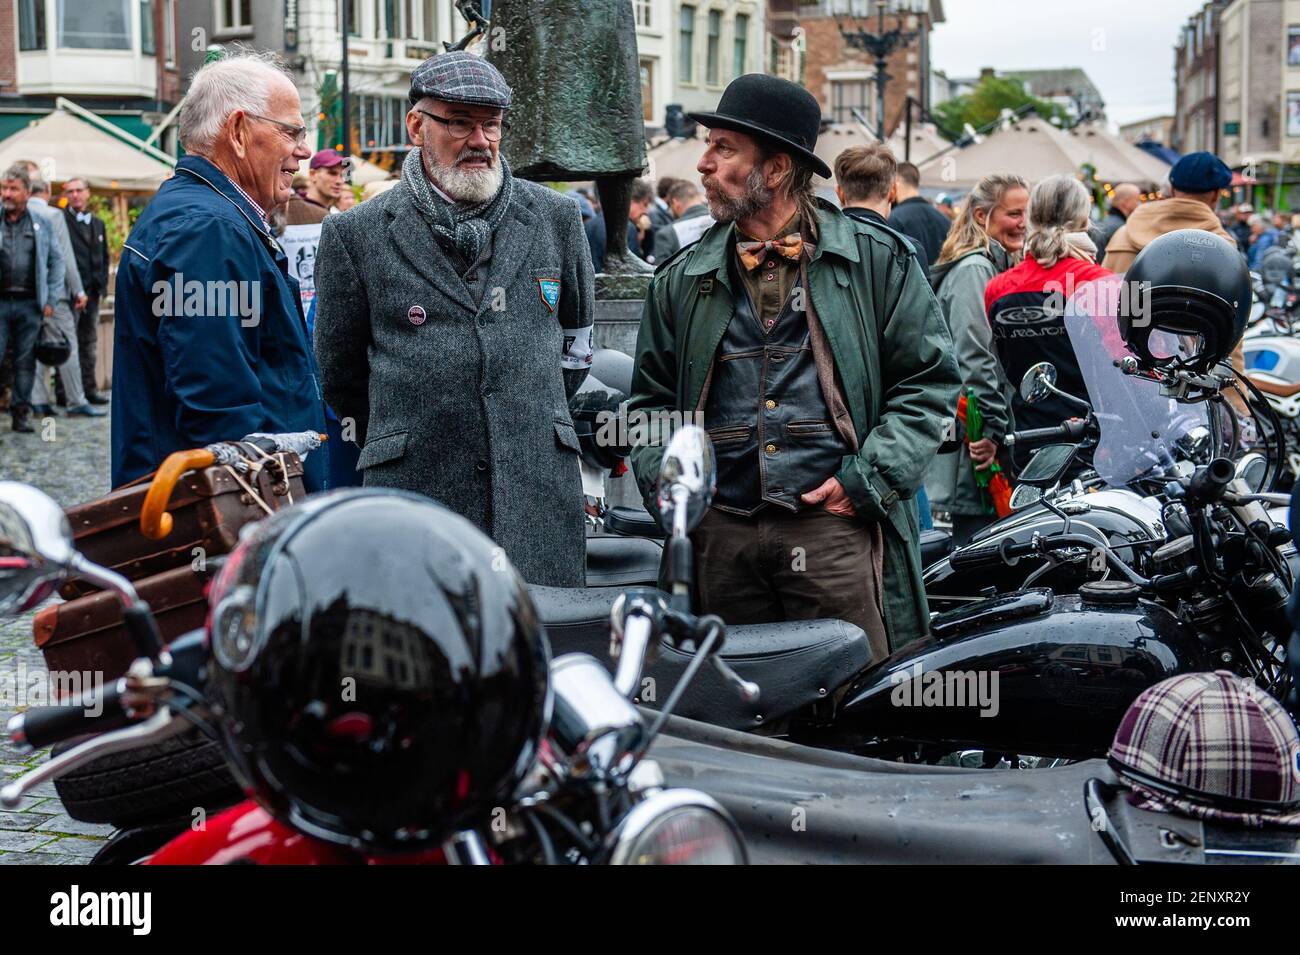 Drei Männer tragen Retro Kleidung gesehen sprechen rund um die Motorräder.  Der Distinguished Gentleman Ride vereint klassische und Vintage Style  Motorradfahrer auf der ganzen Welt, um Kapital und Bewußtsein für  Prostatakrebs Forschung